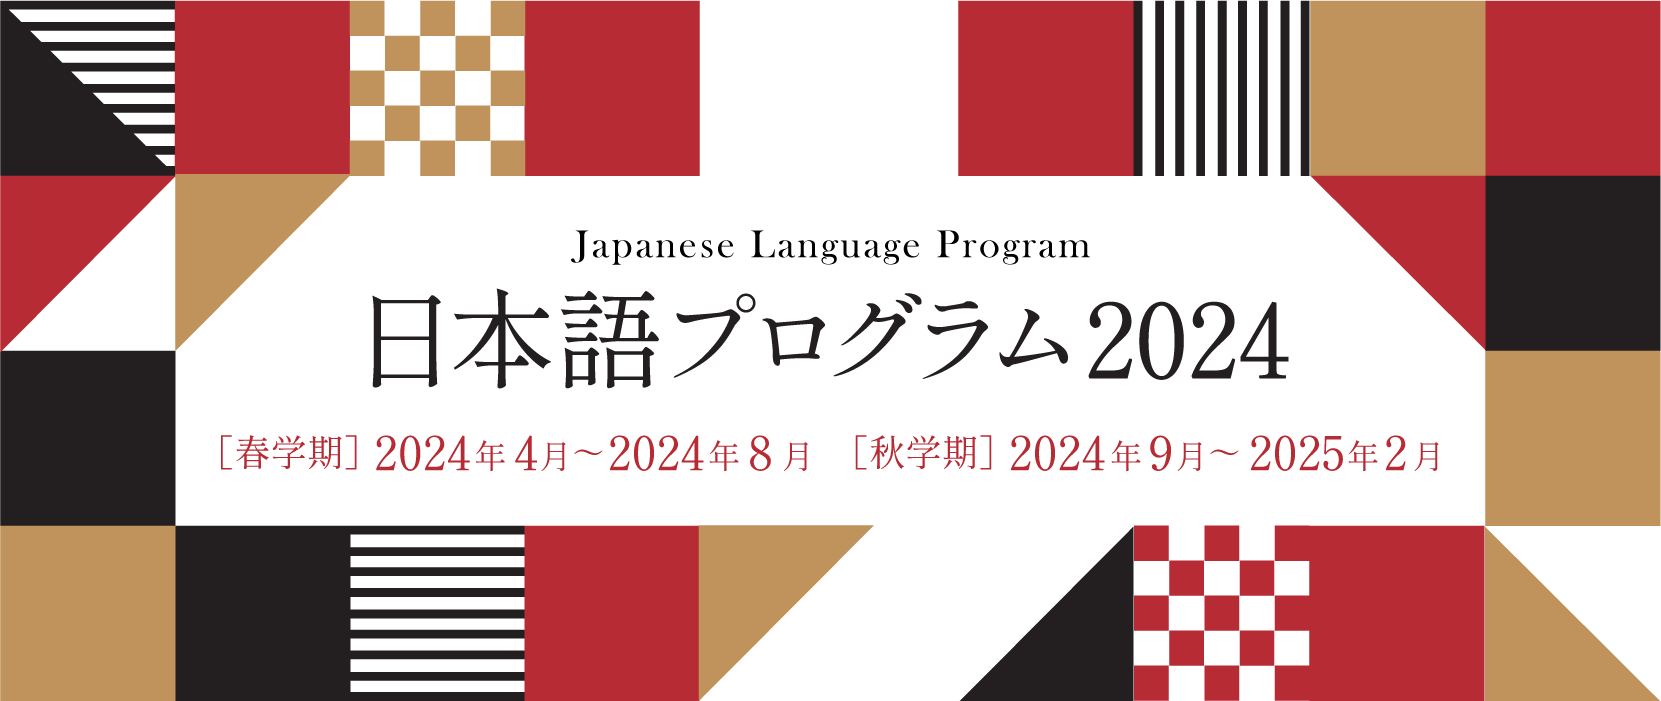 プレミアリーグ オッズ
 日本語プログラム 2023